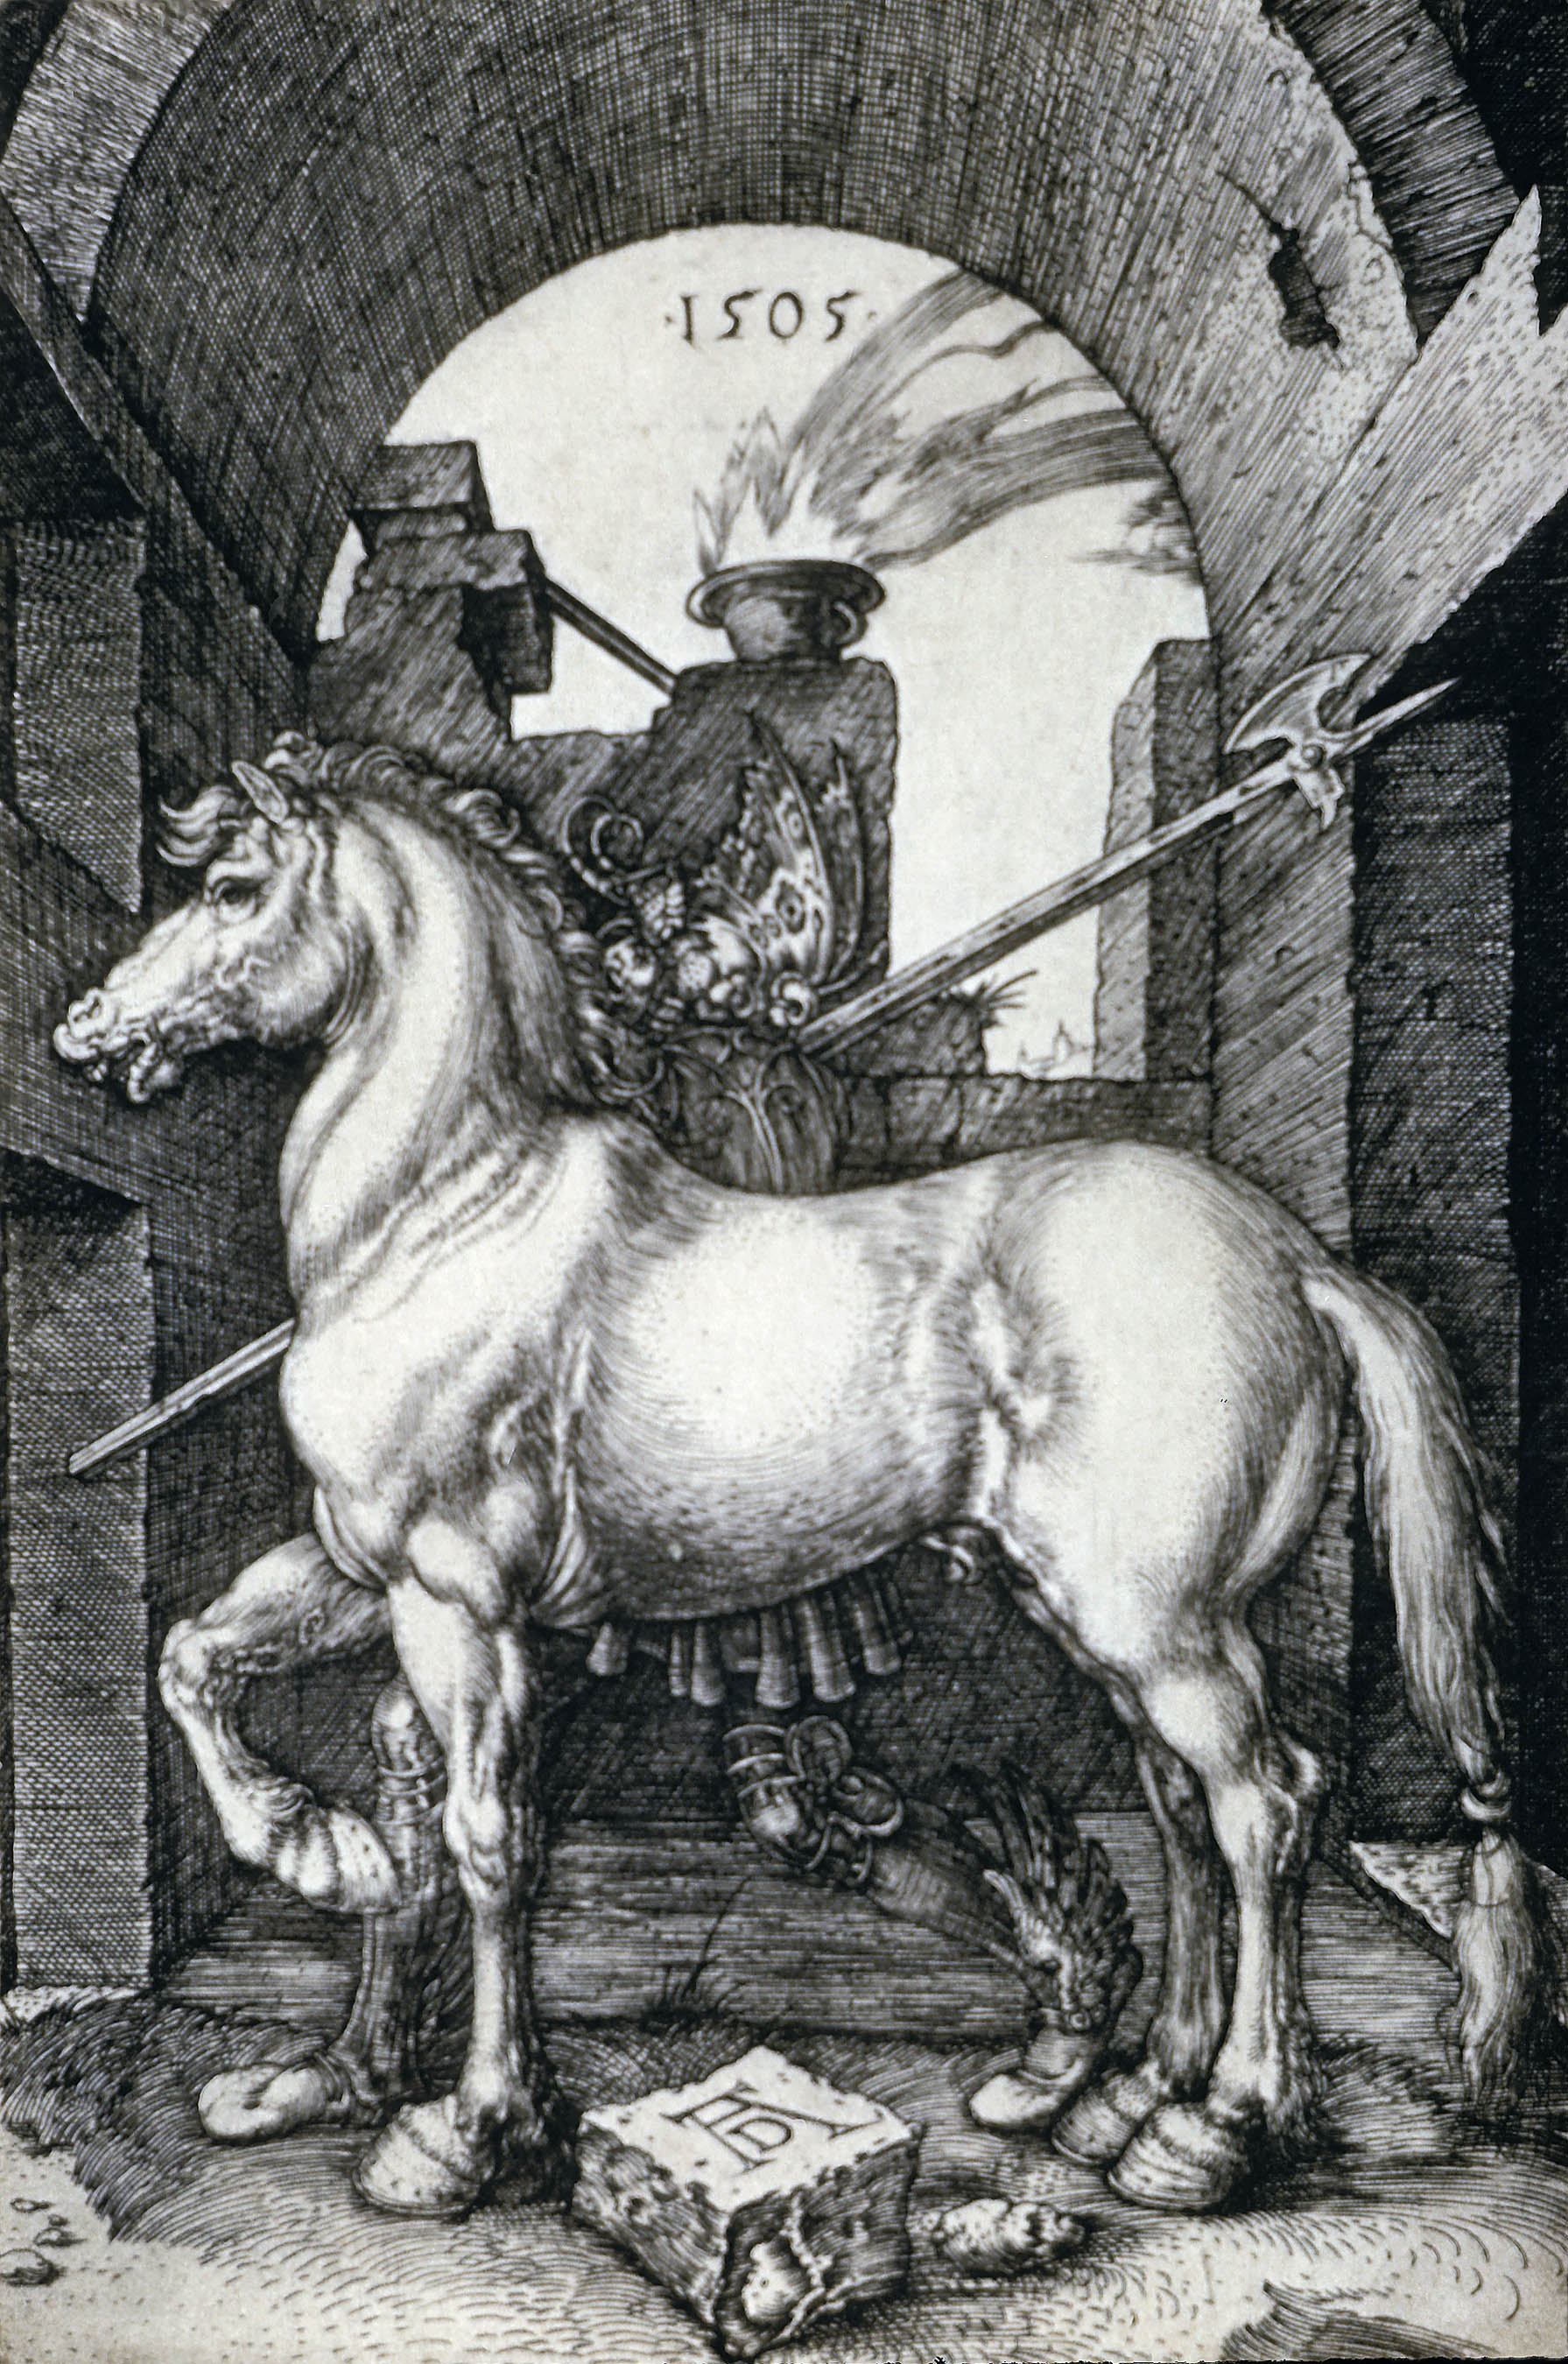 Klein Paard by Albrecht Durer - 1505 - - 